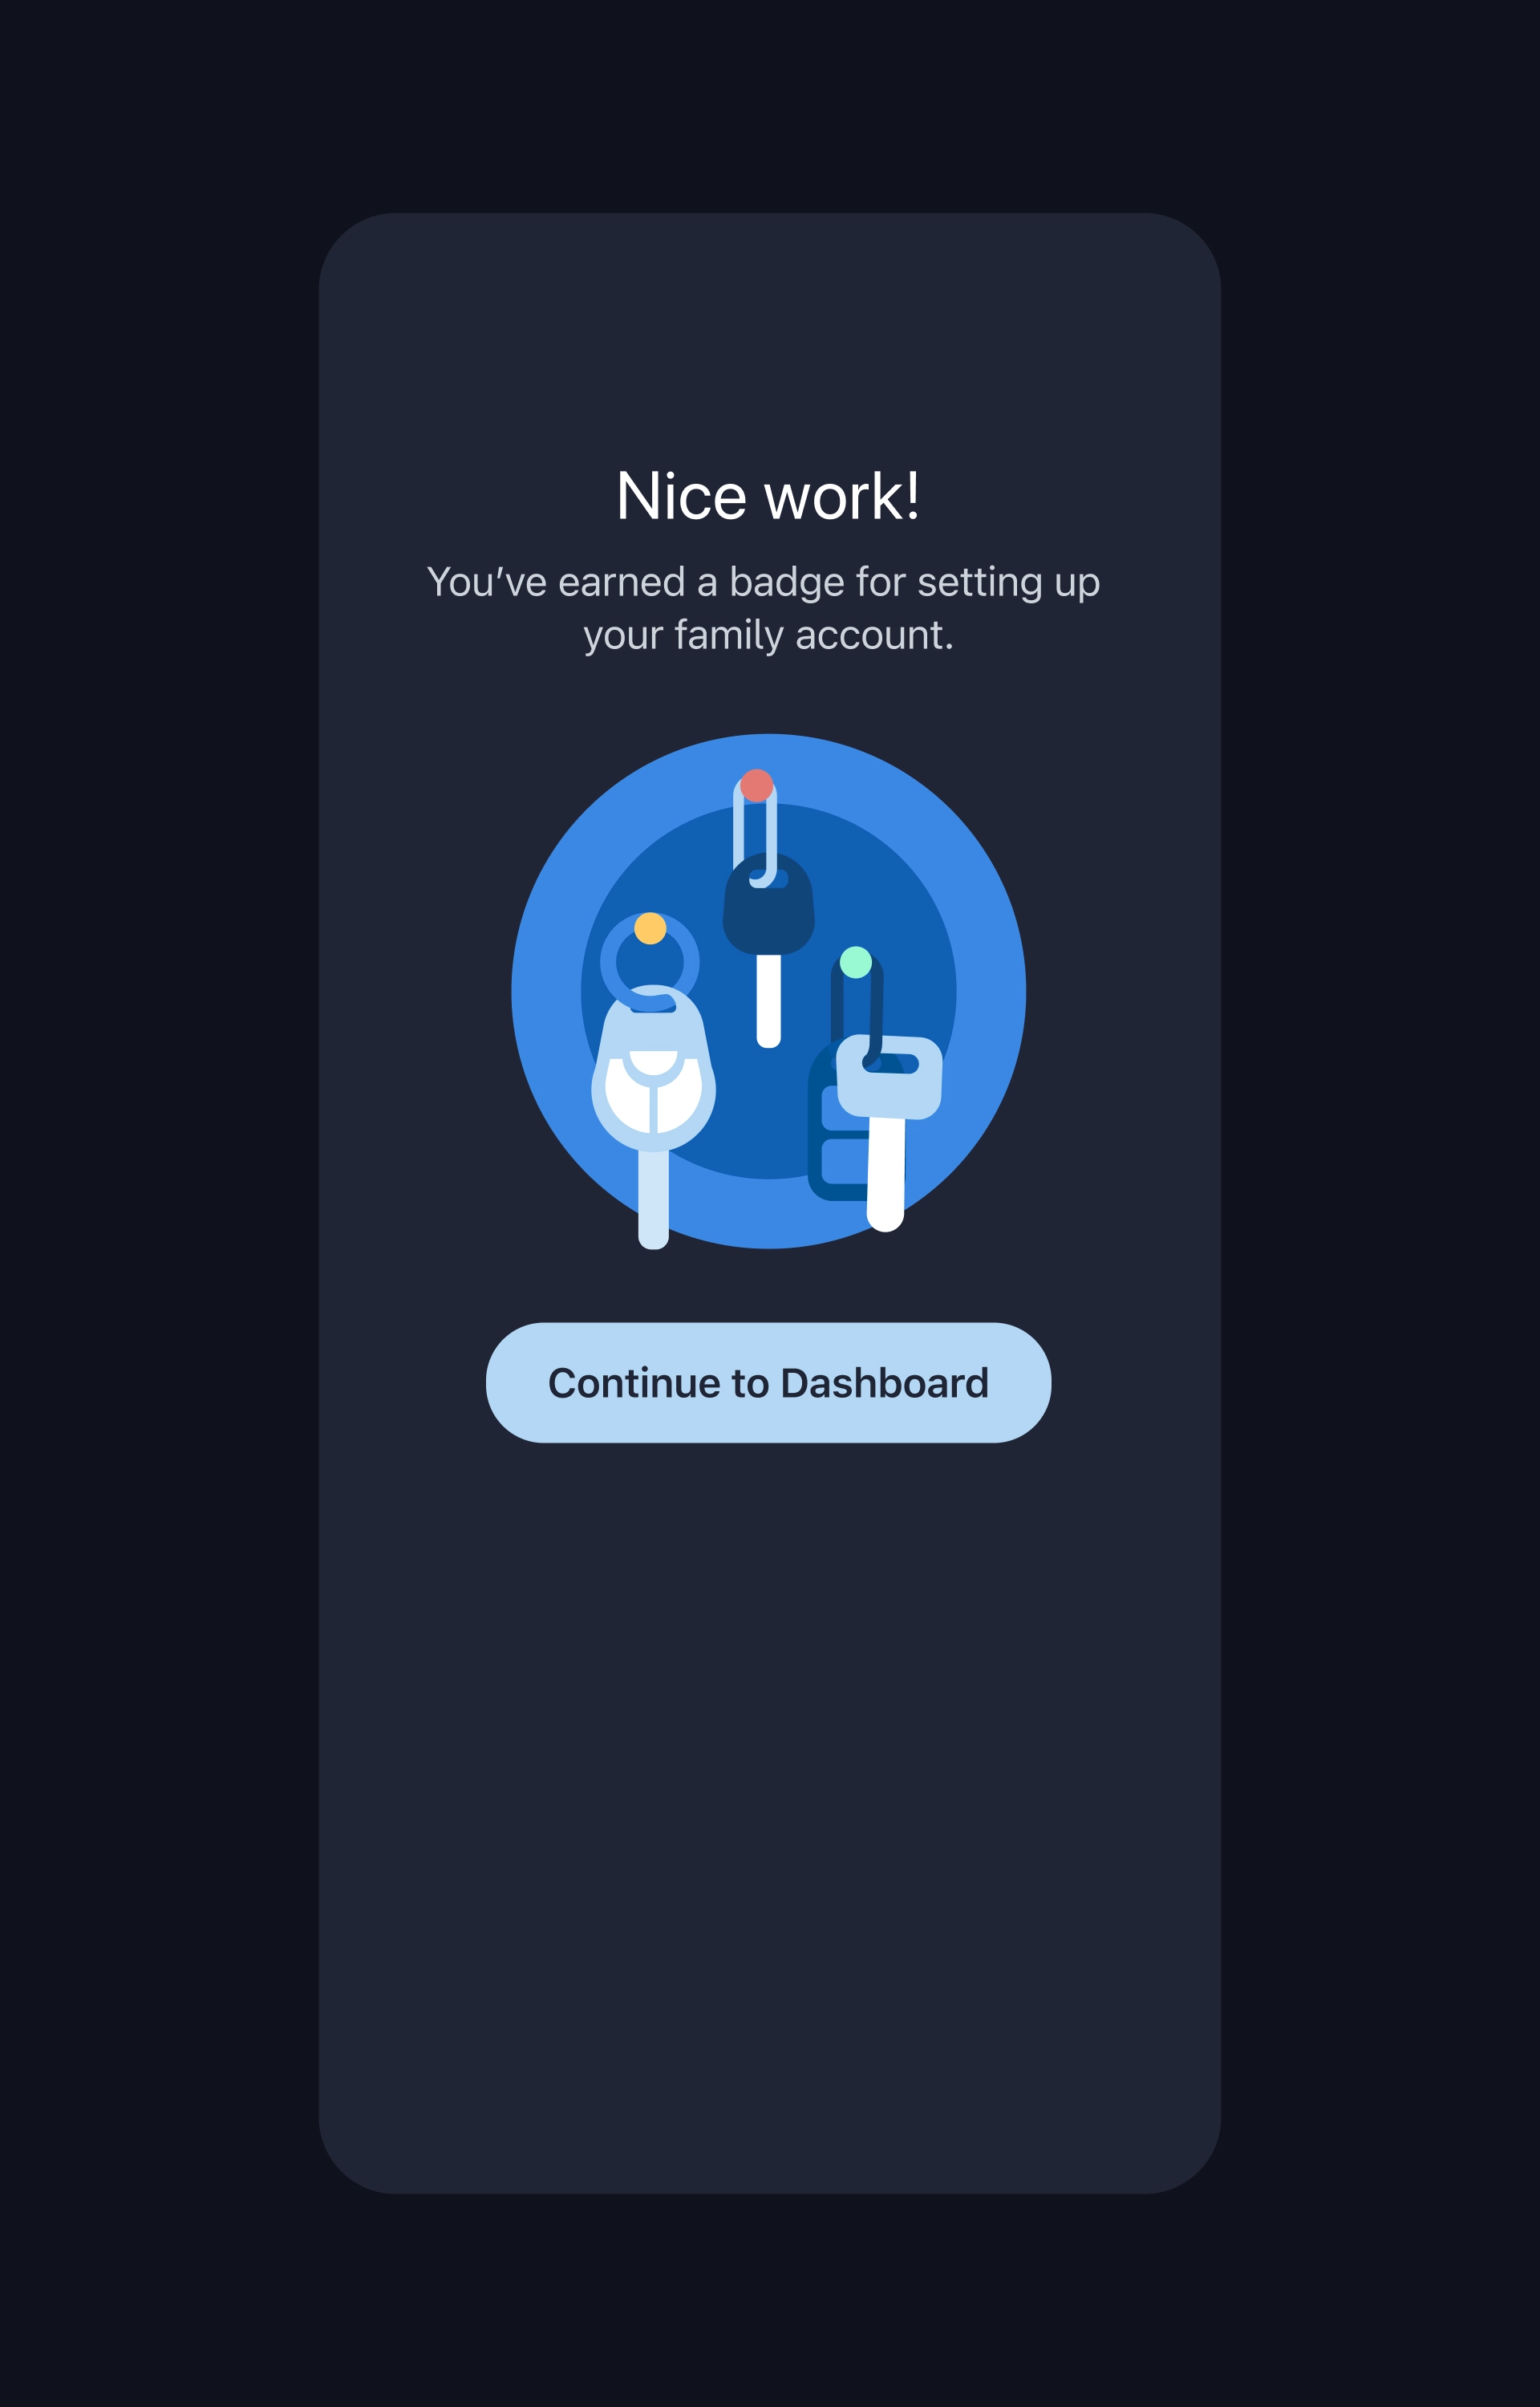 badges for completing in-app tasks